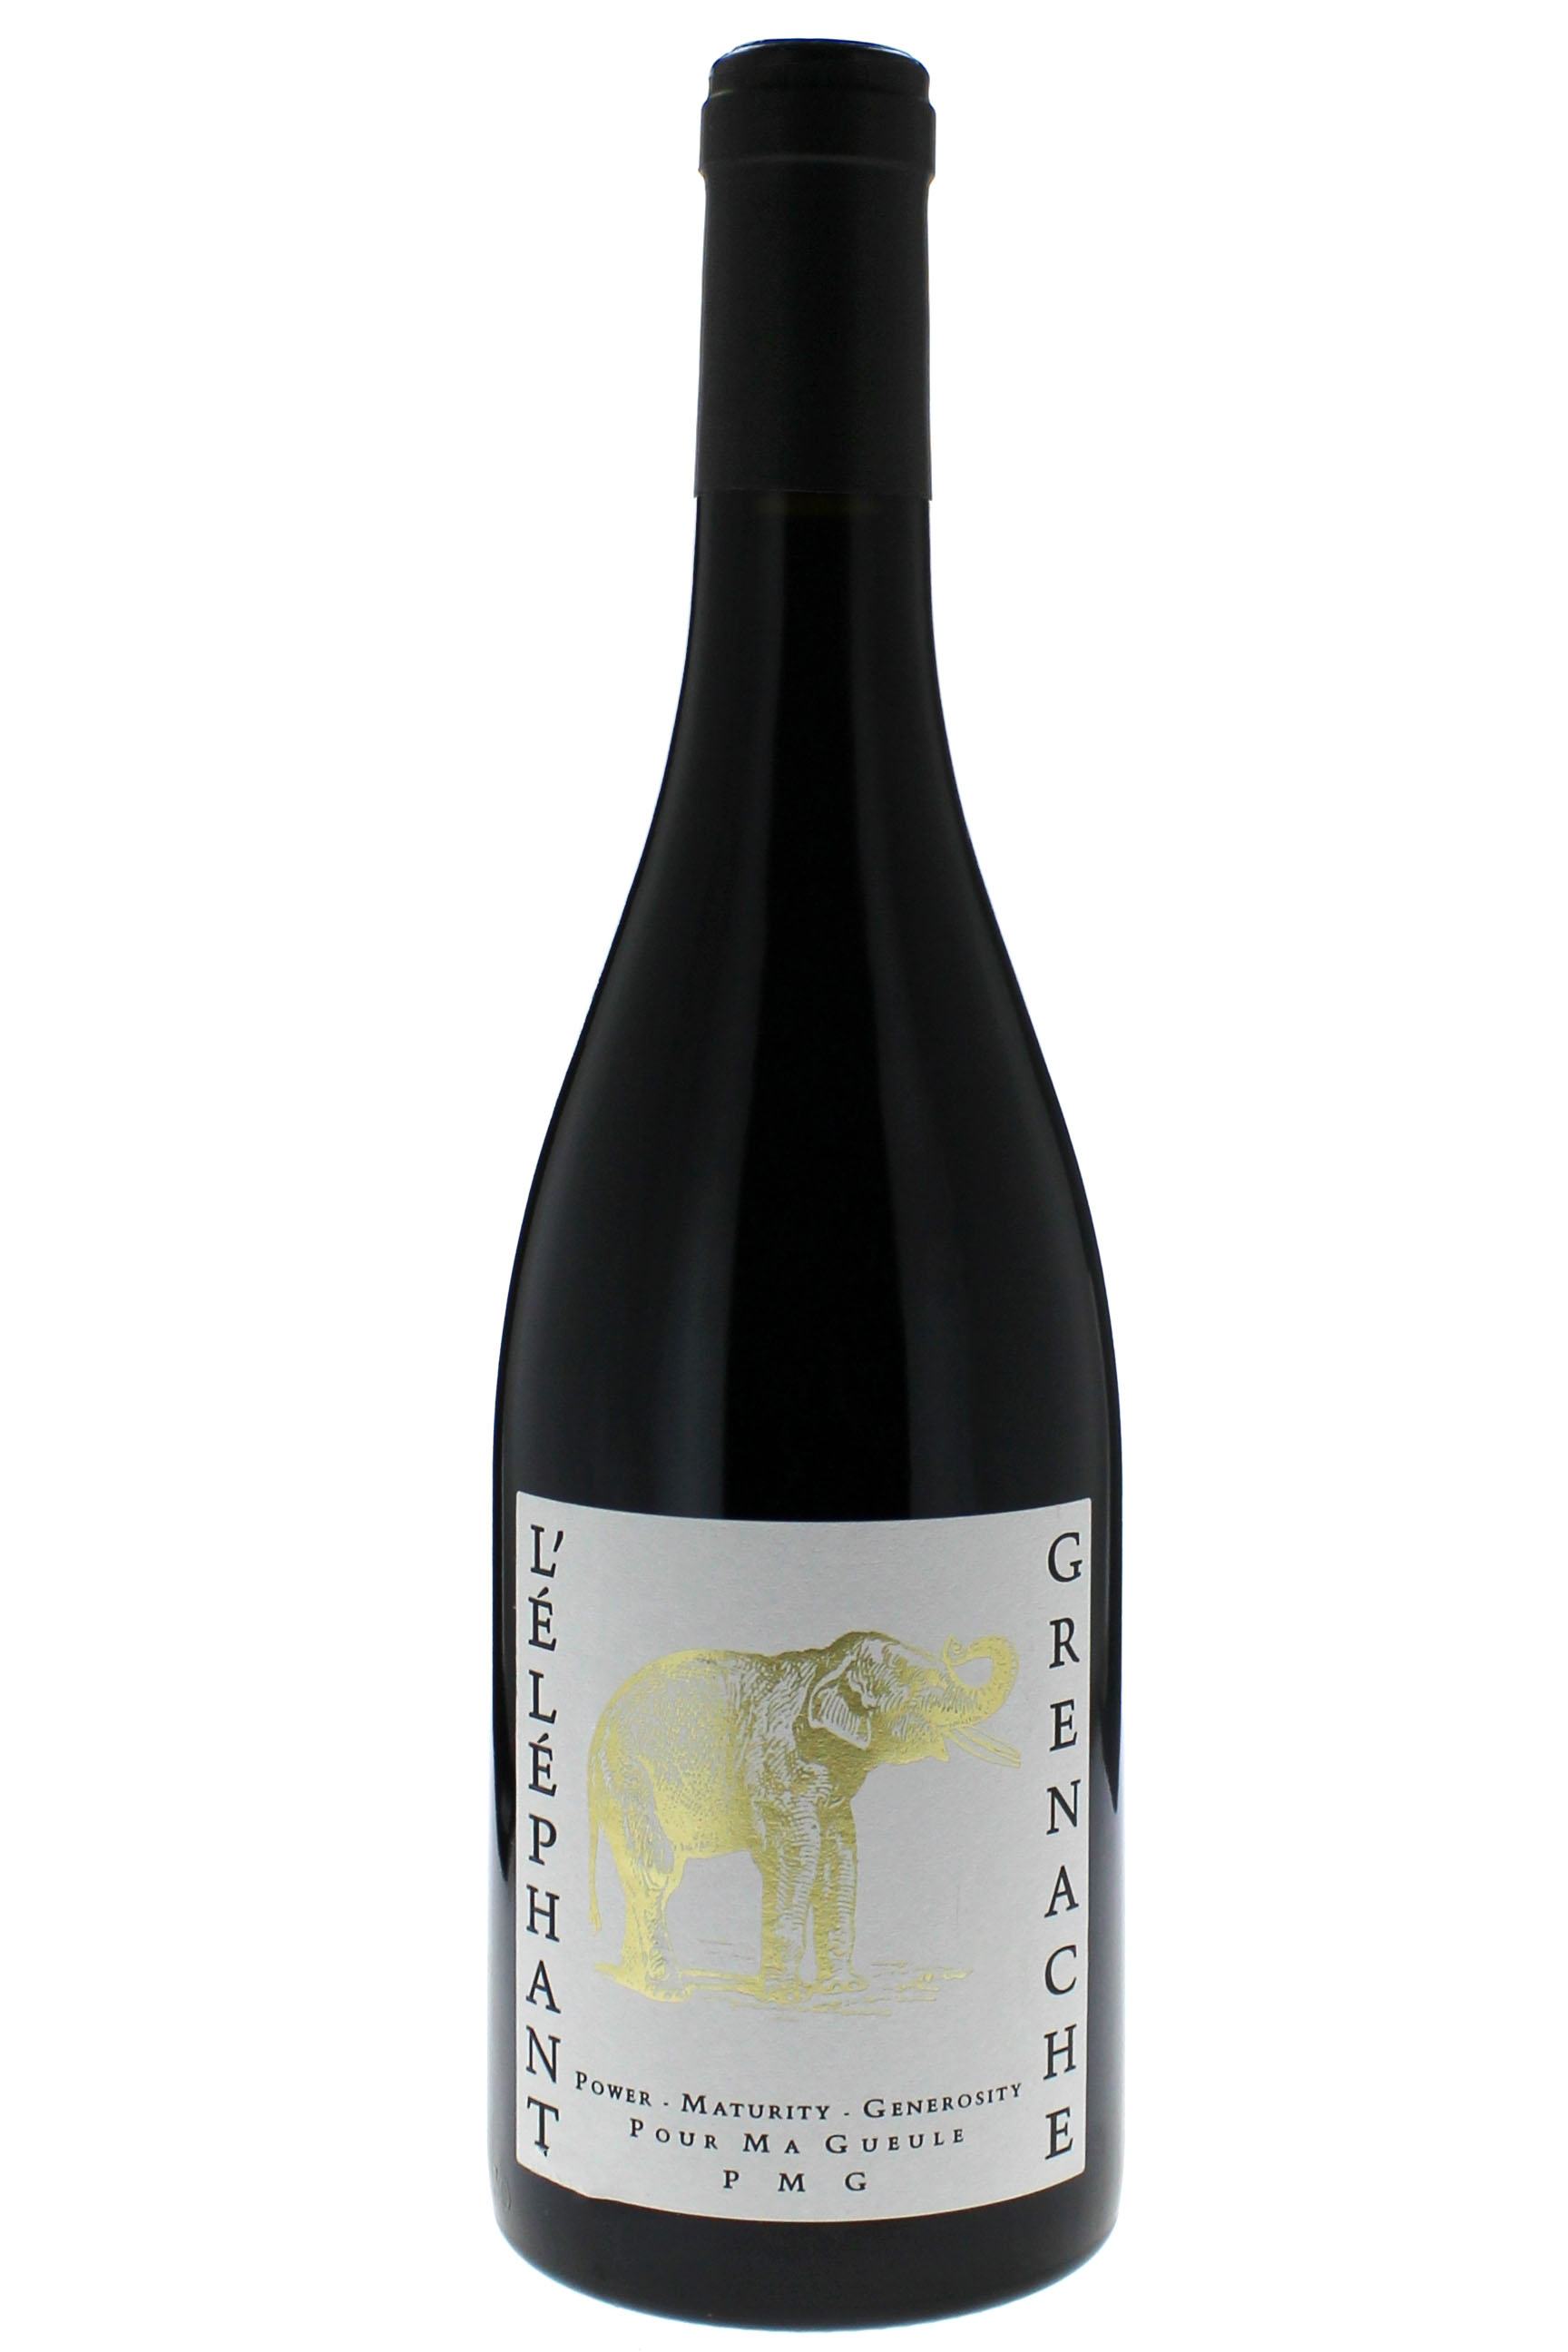 Domaine pichon cuve elphant  100% grenache (unit) 2014  Vin de Pays, Vaucluse